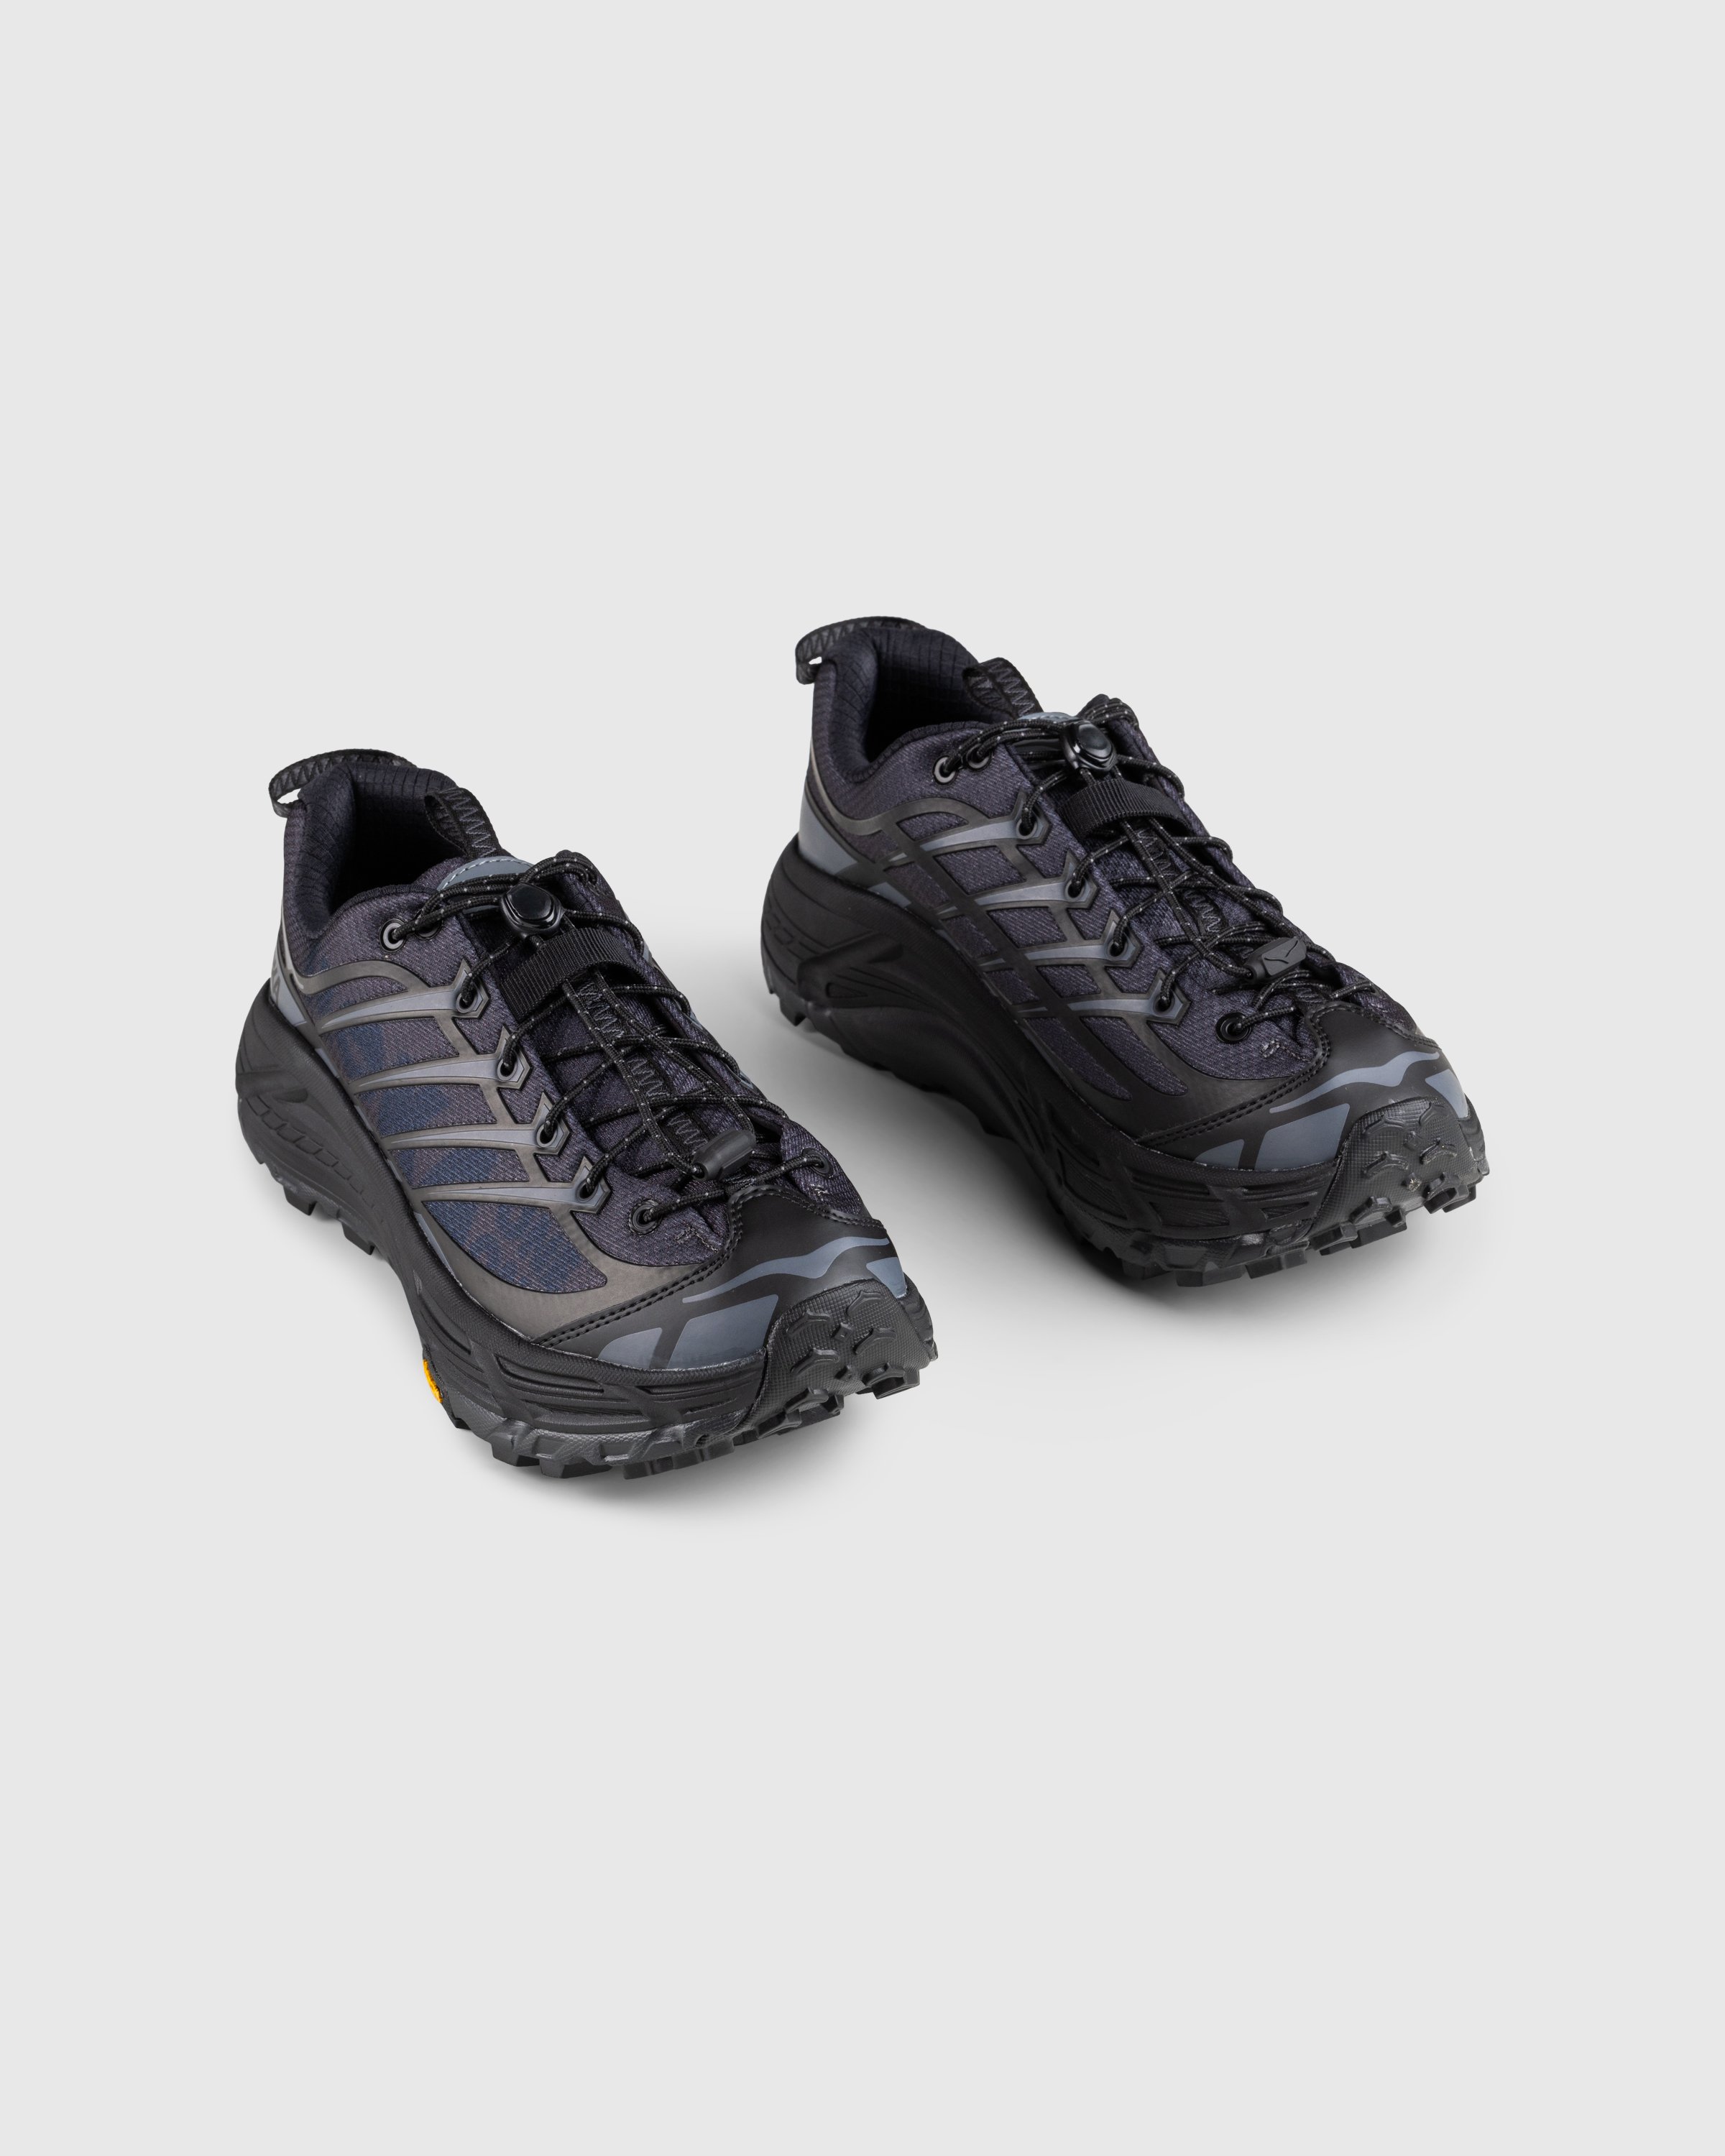 HOKA - Mafate Three 2 Black - Footwear - Black - Image 3